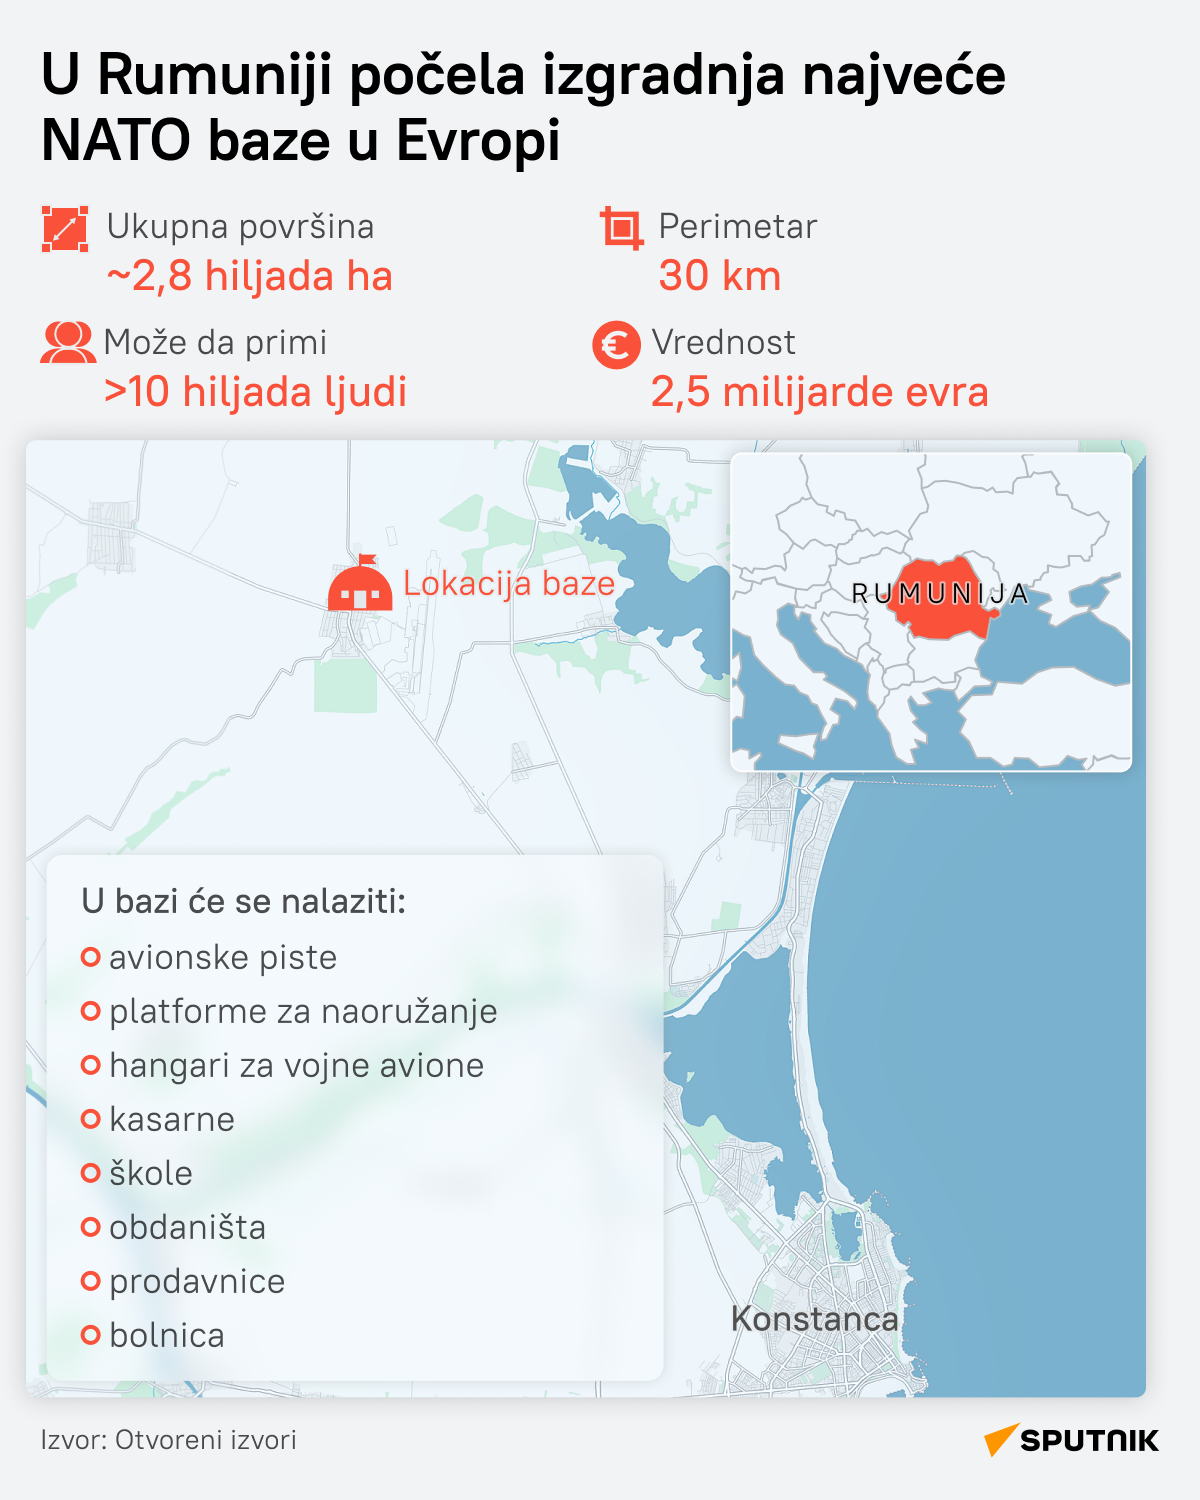 infografika Rumunija NATO baza LAT desk - Sputnik Srbija